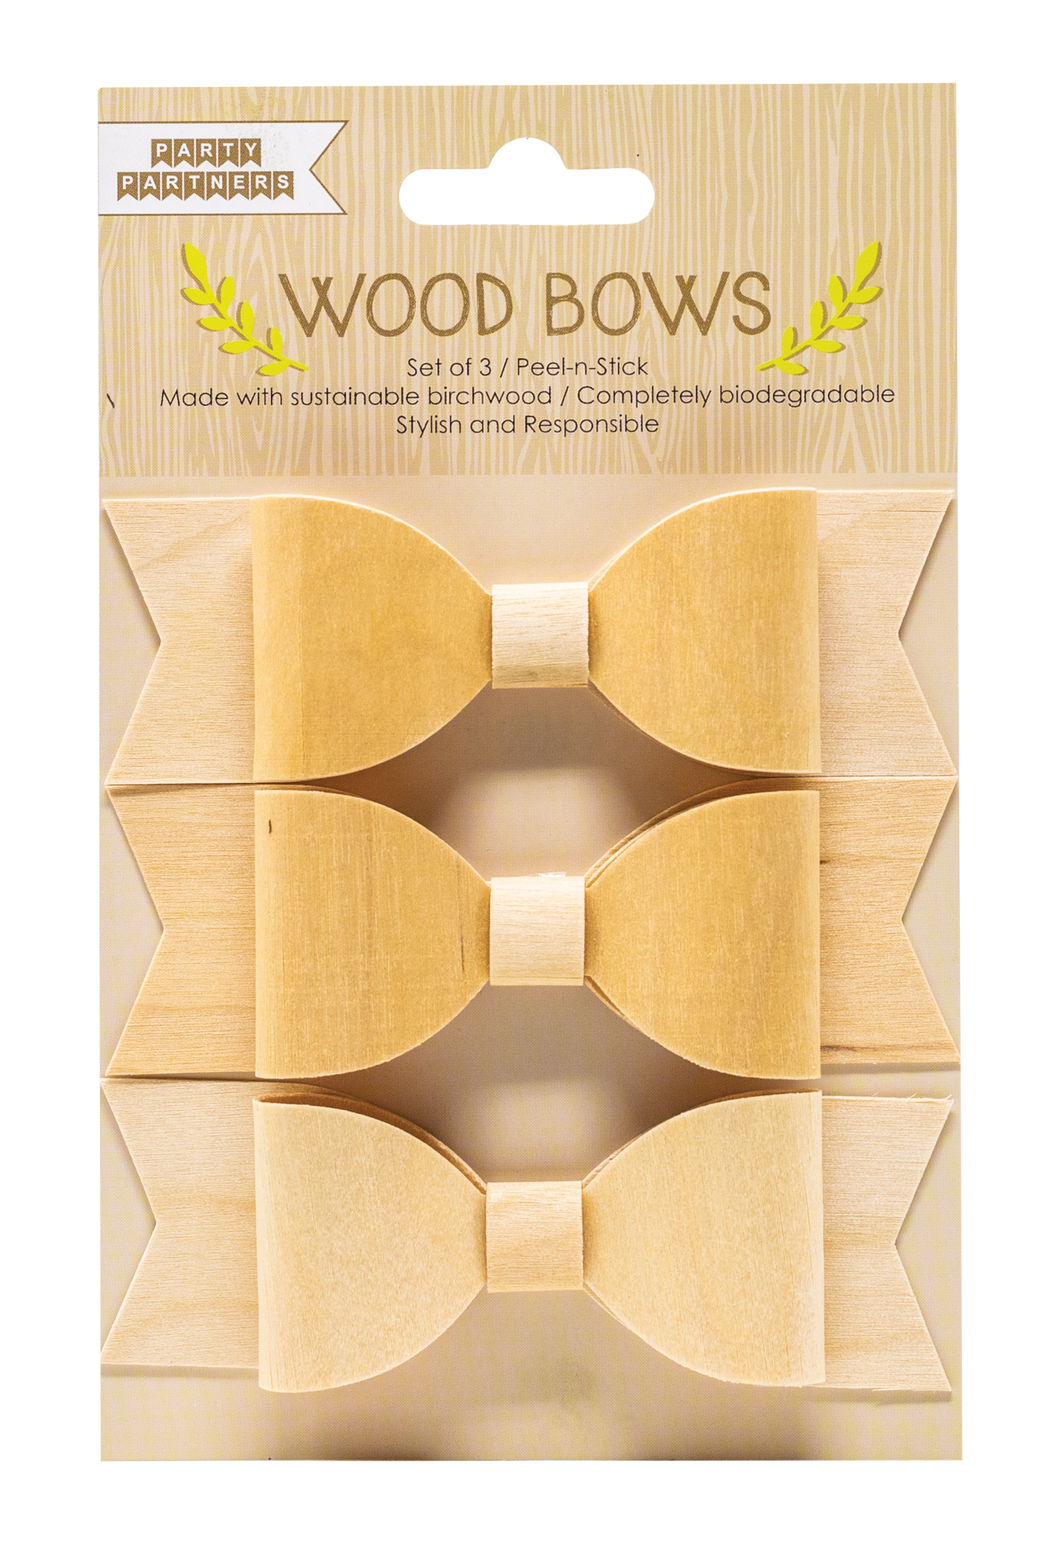 Wood Bows